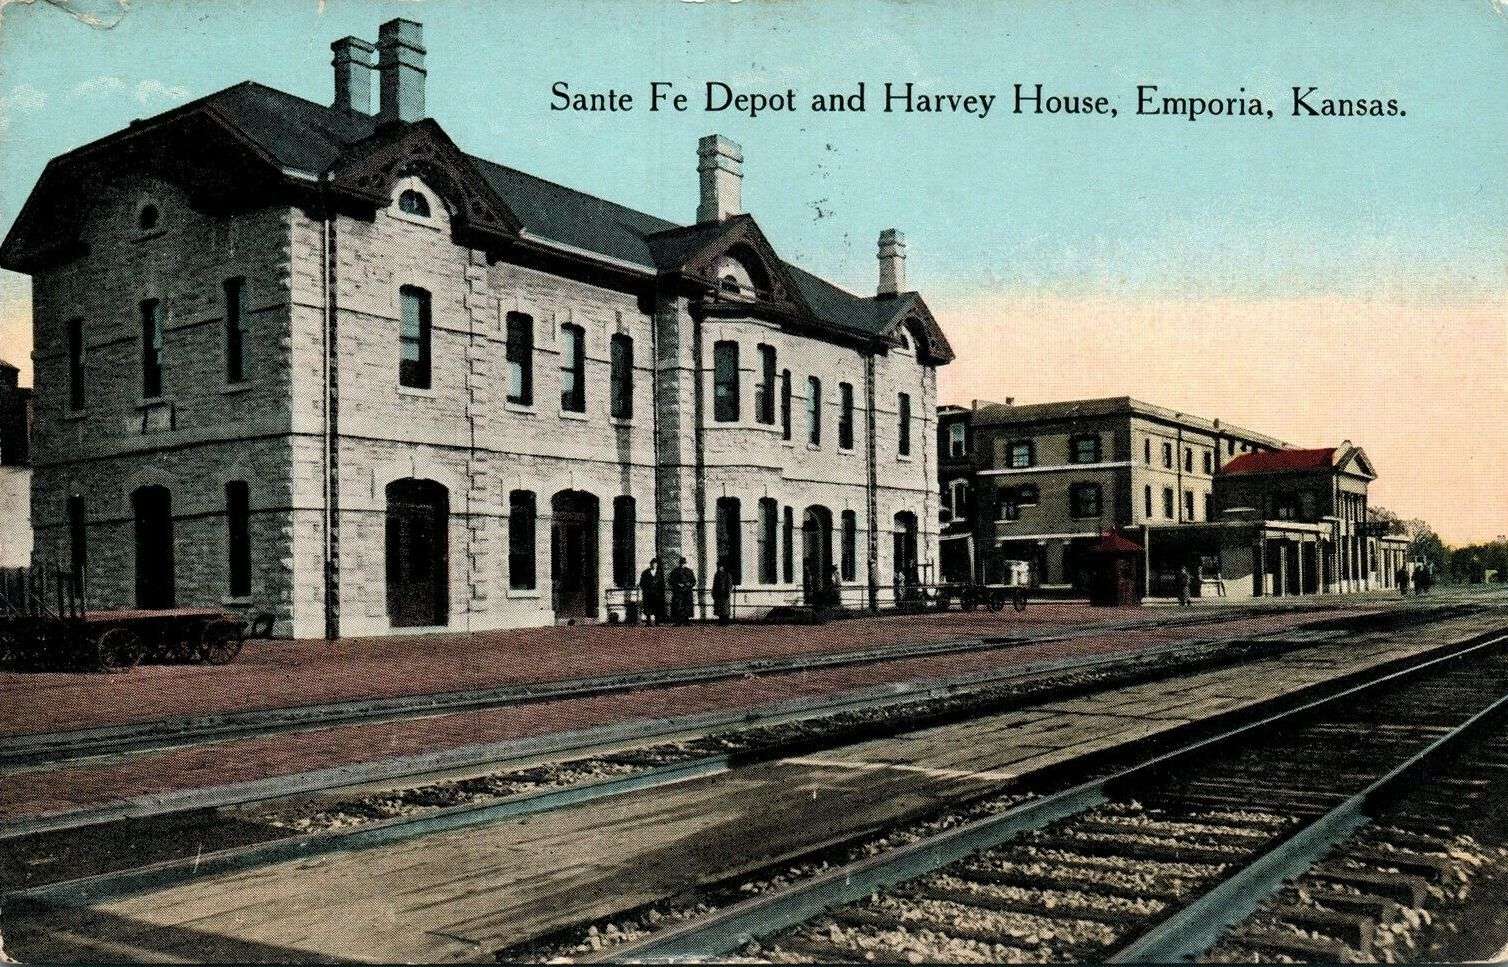 Santa Fe Depot and Harvey House in Emporia, Kansas.